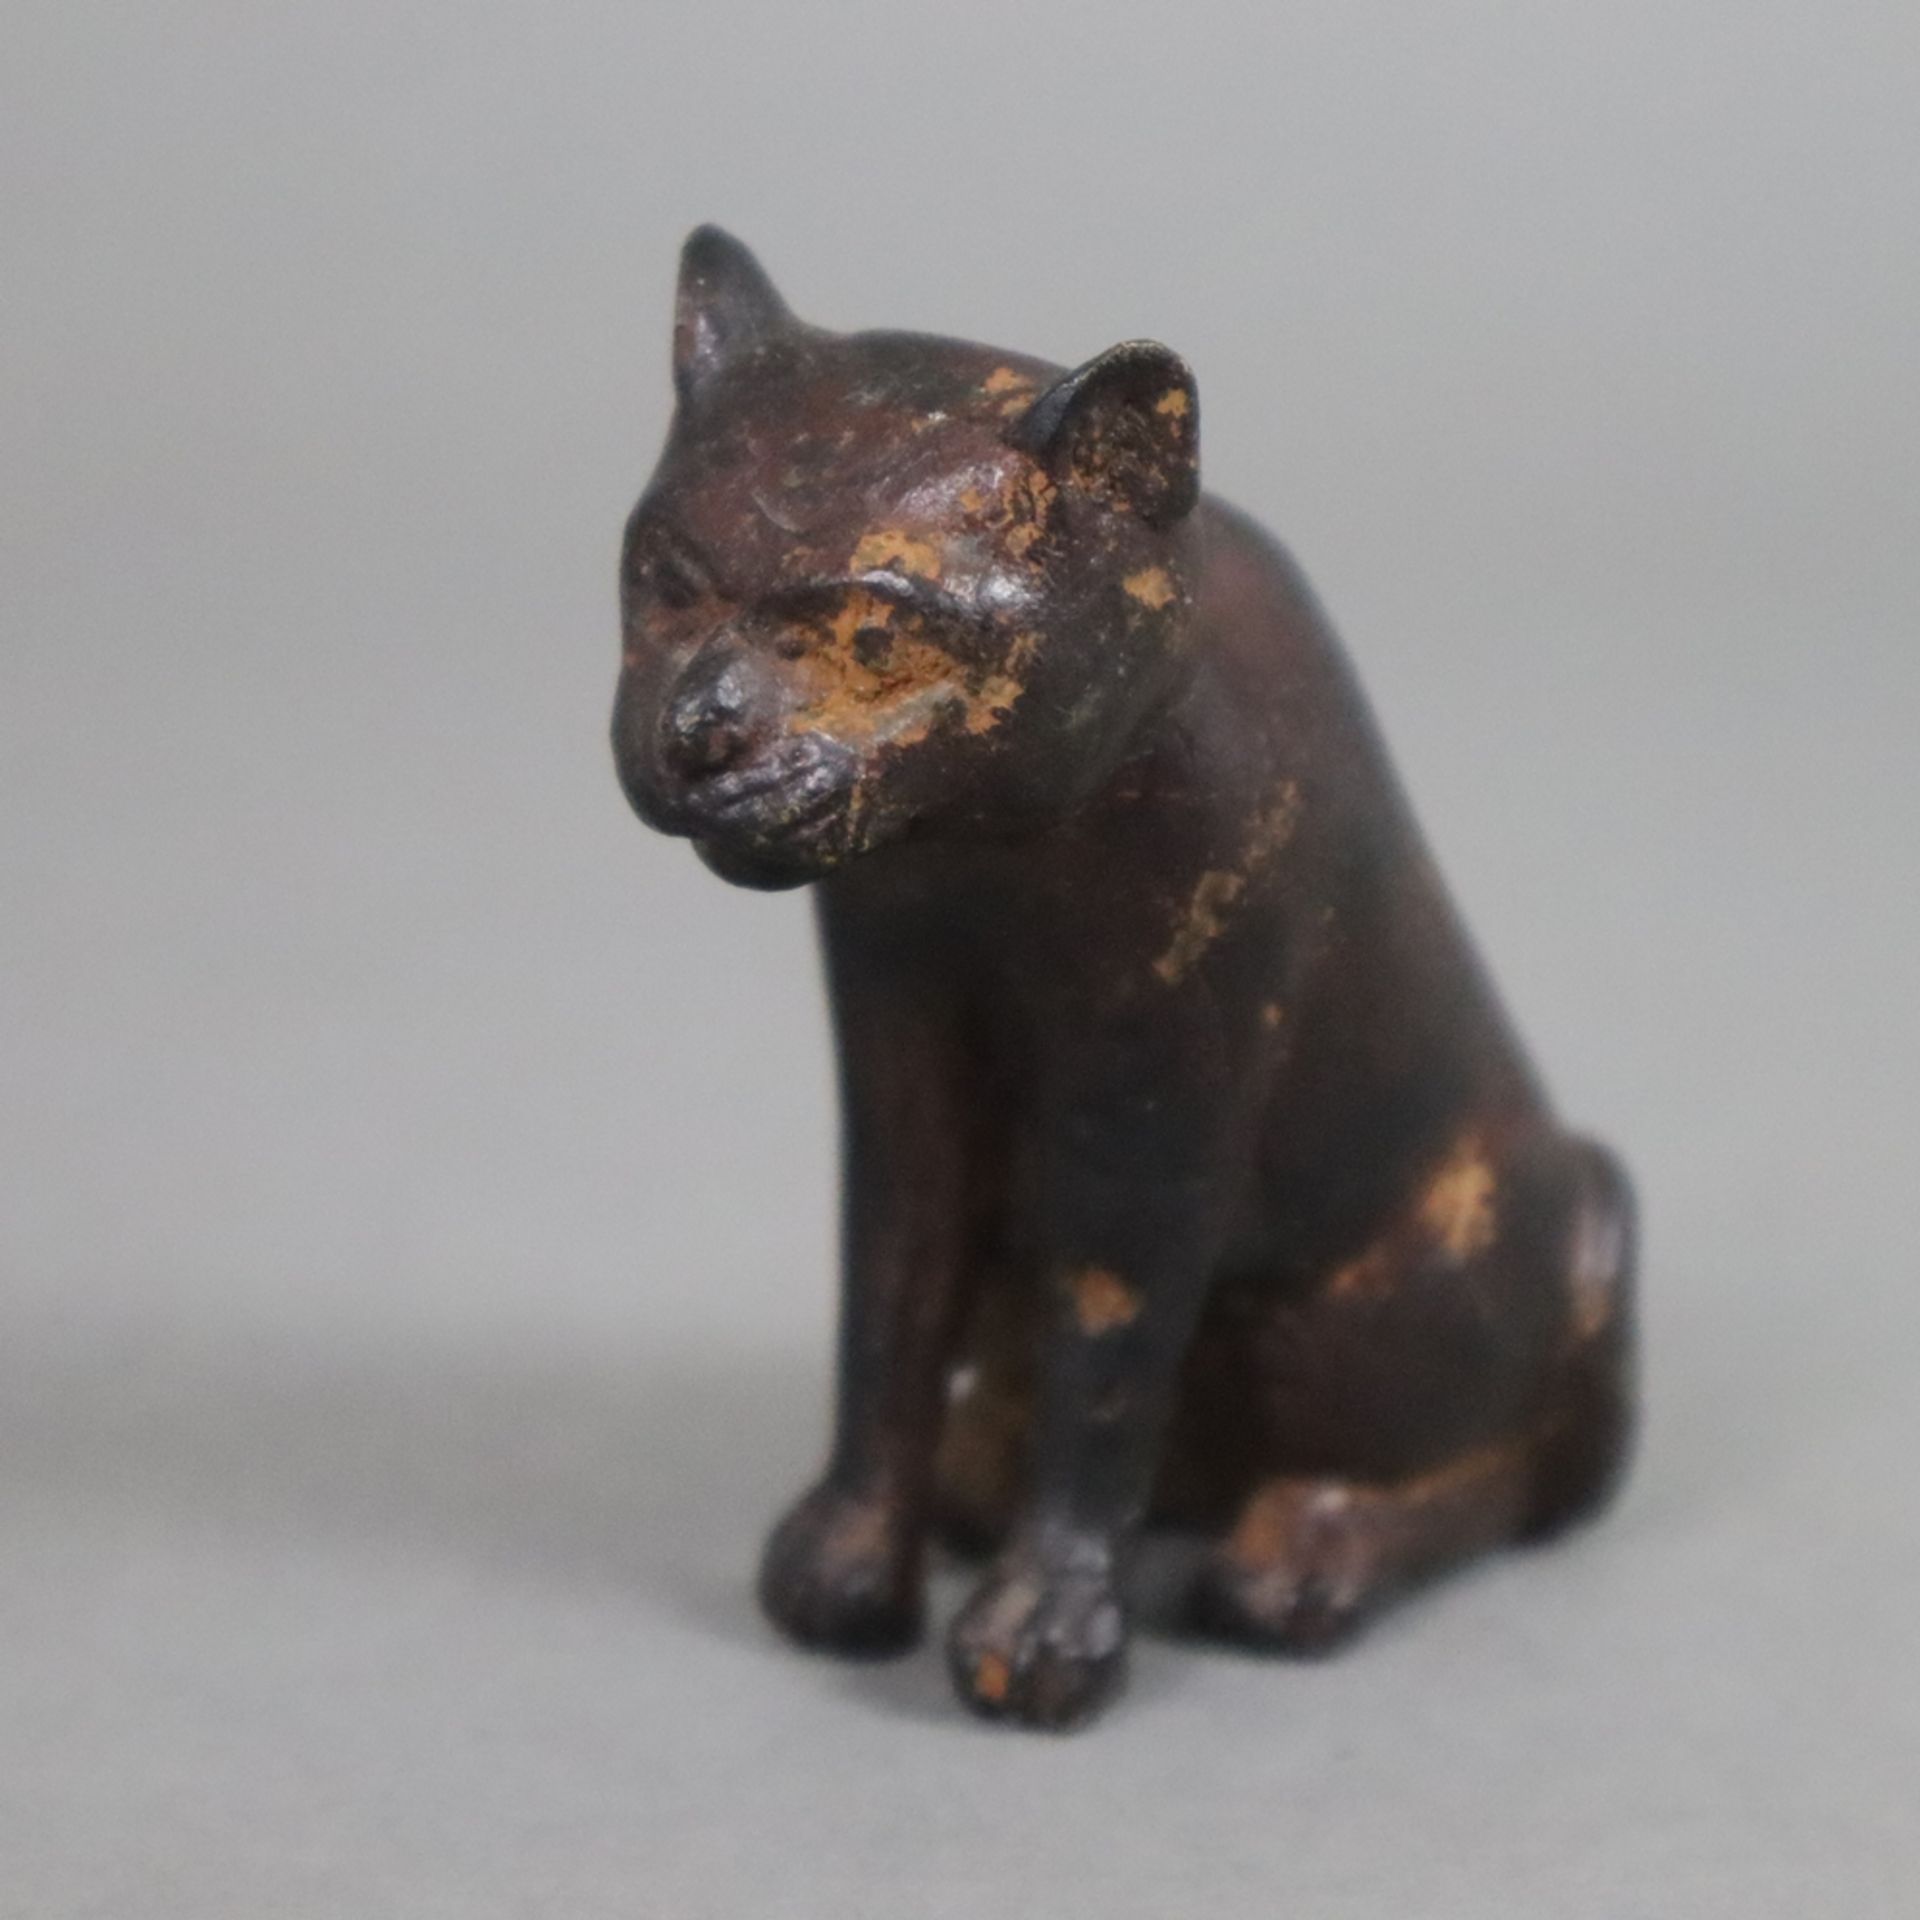 Antike Miniaturfigur einer Katze - Gelbguss, dunkel patiniert, vollrunde Miniaturdarstellung einer